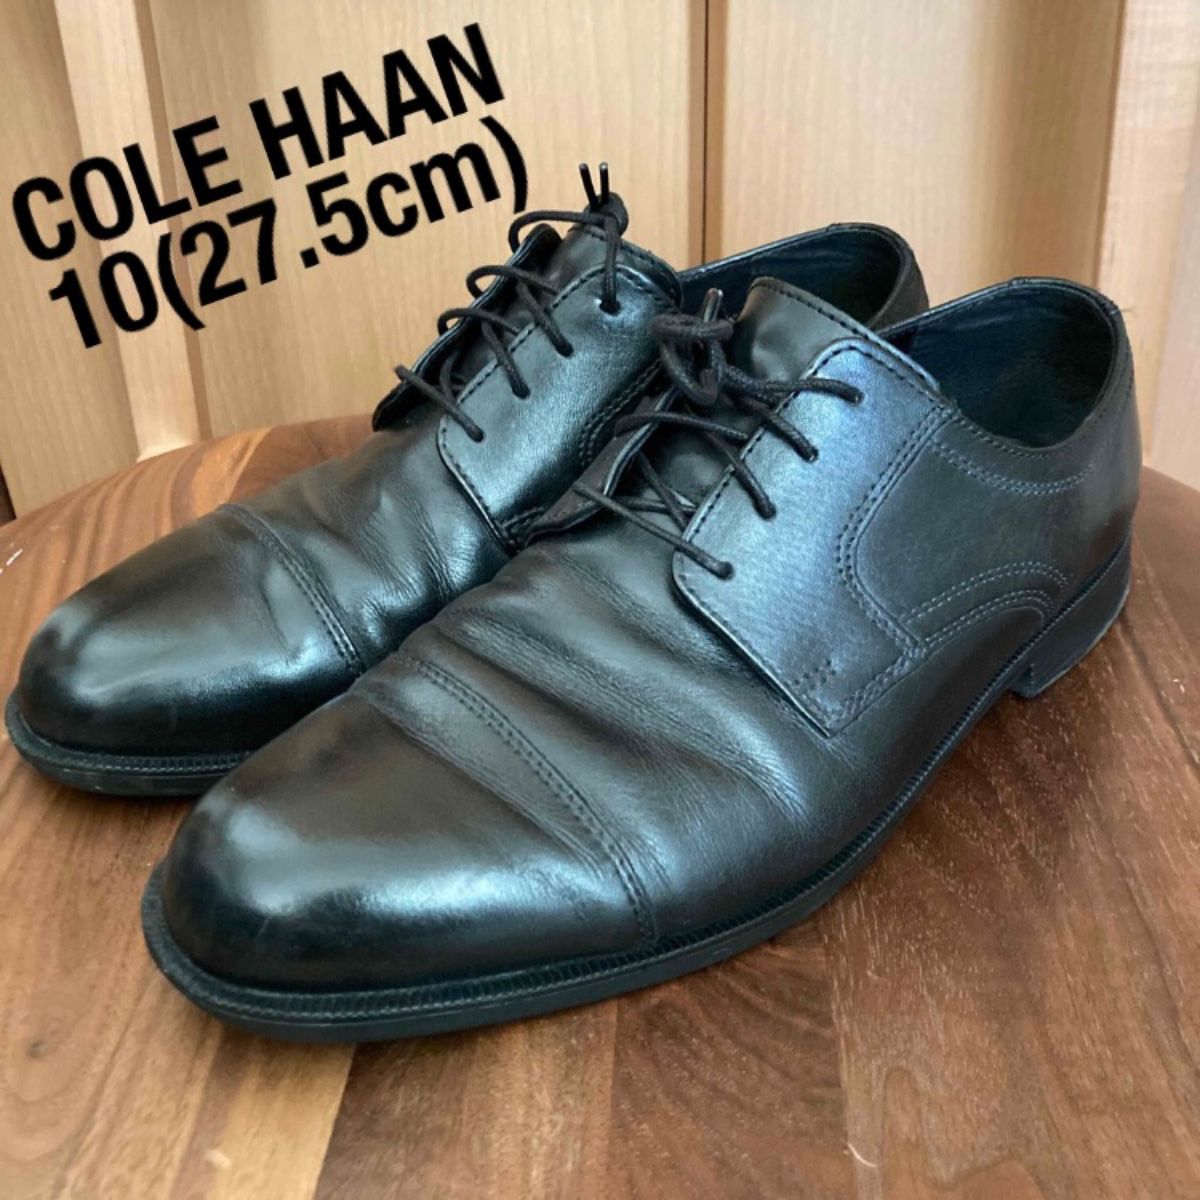 コールハーン 10(27.5cm) COLE HAAN ビジネスシューズ 革靴